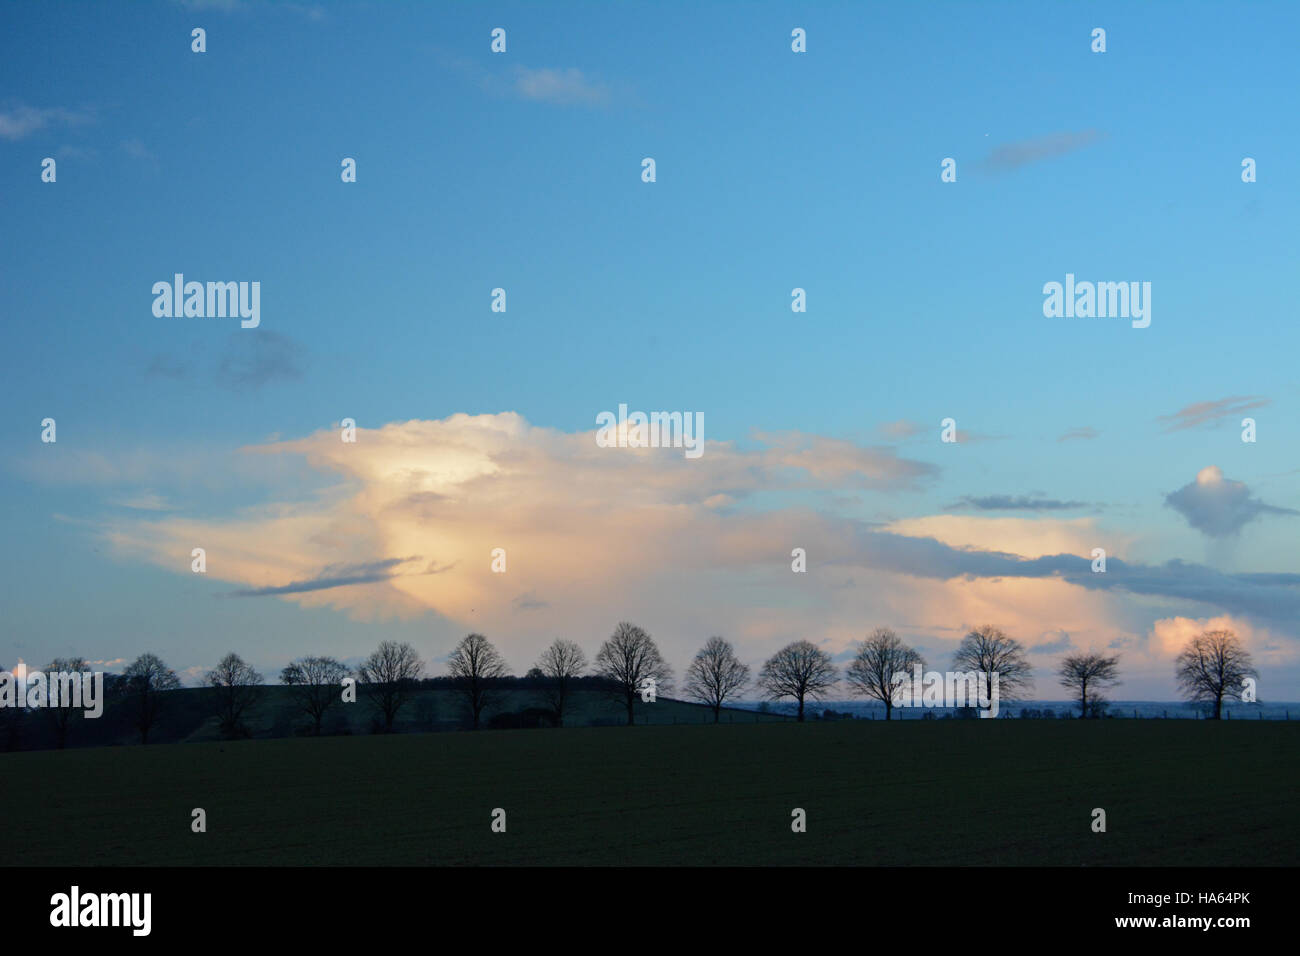 Ligne d'hiver Costwold tranquille d'arbres silhouette sur un ciel parfait bleu solide avec des nuages Banque D'Images